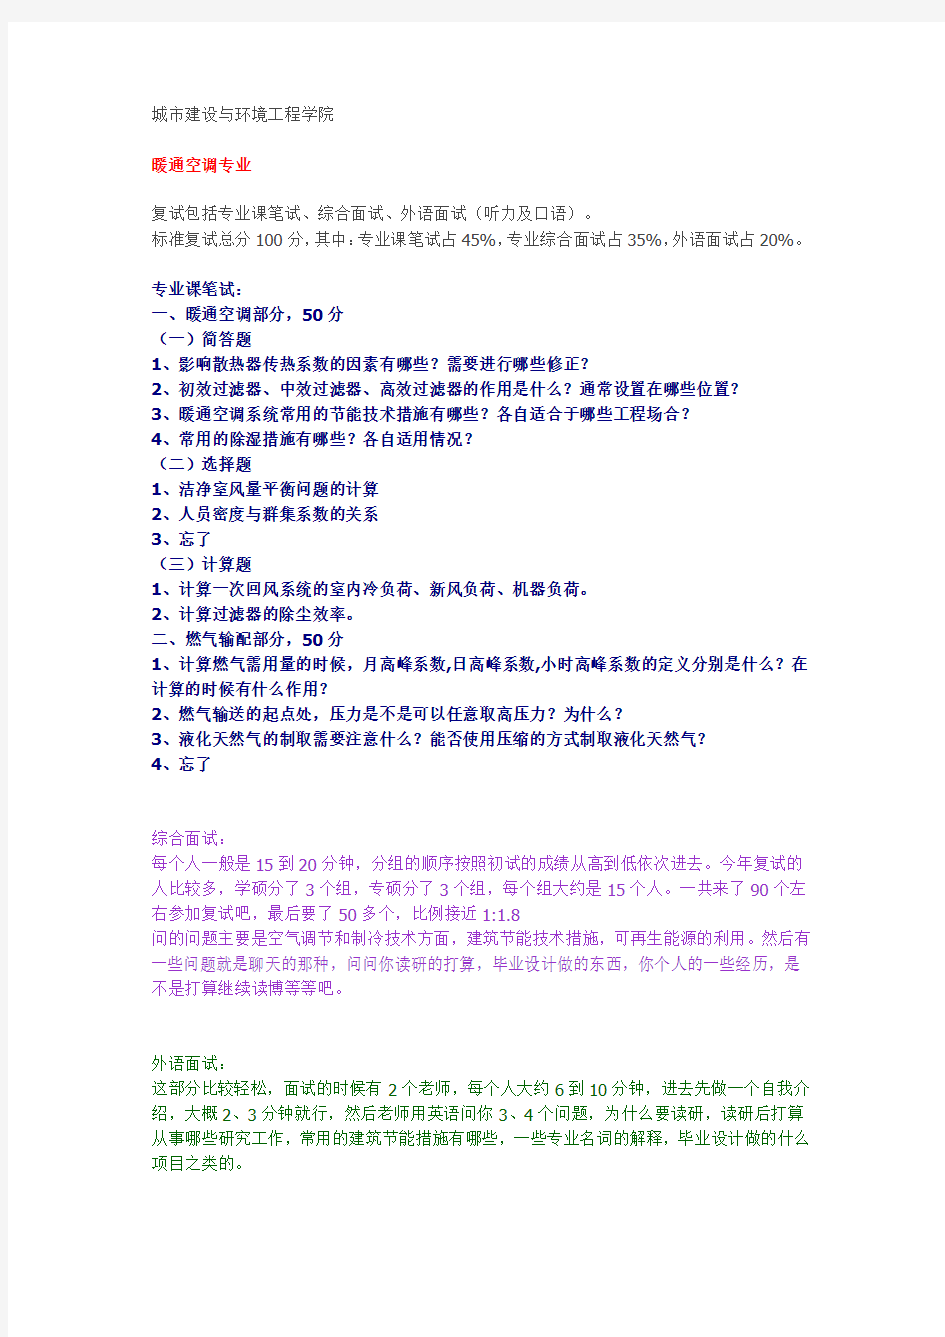 【复试真题】2014年重庆大学-暖通空调专业复试回忆版